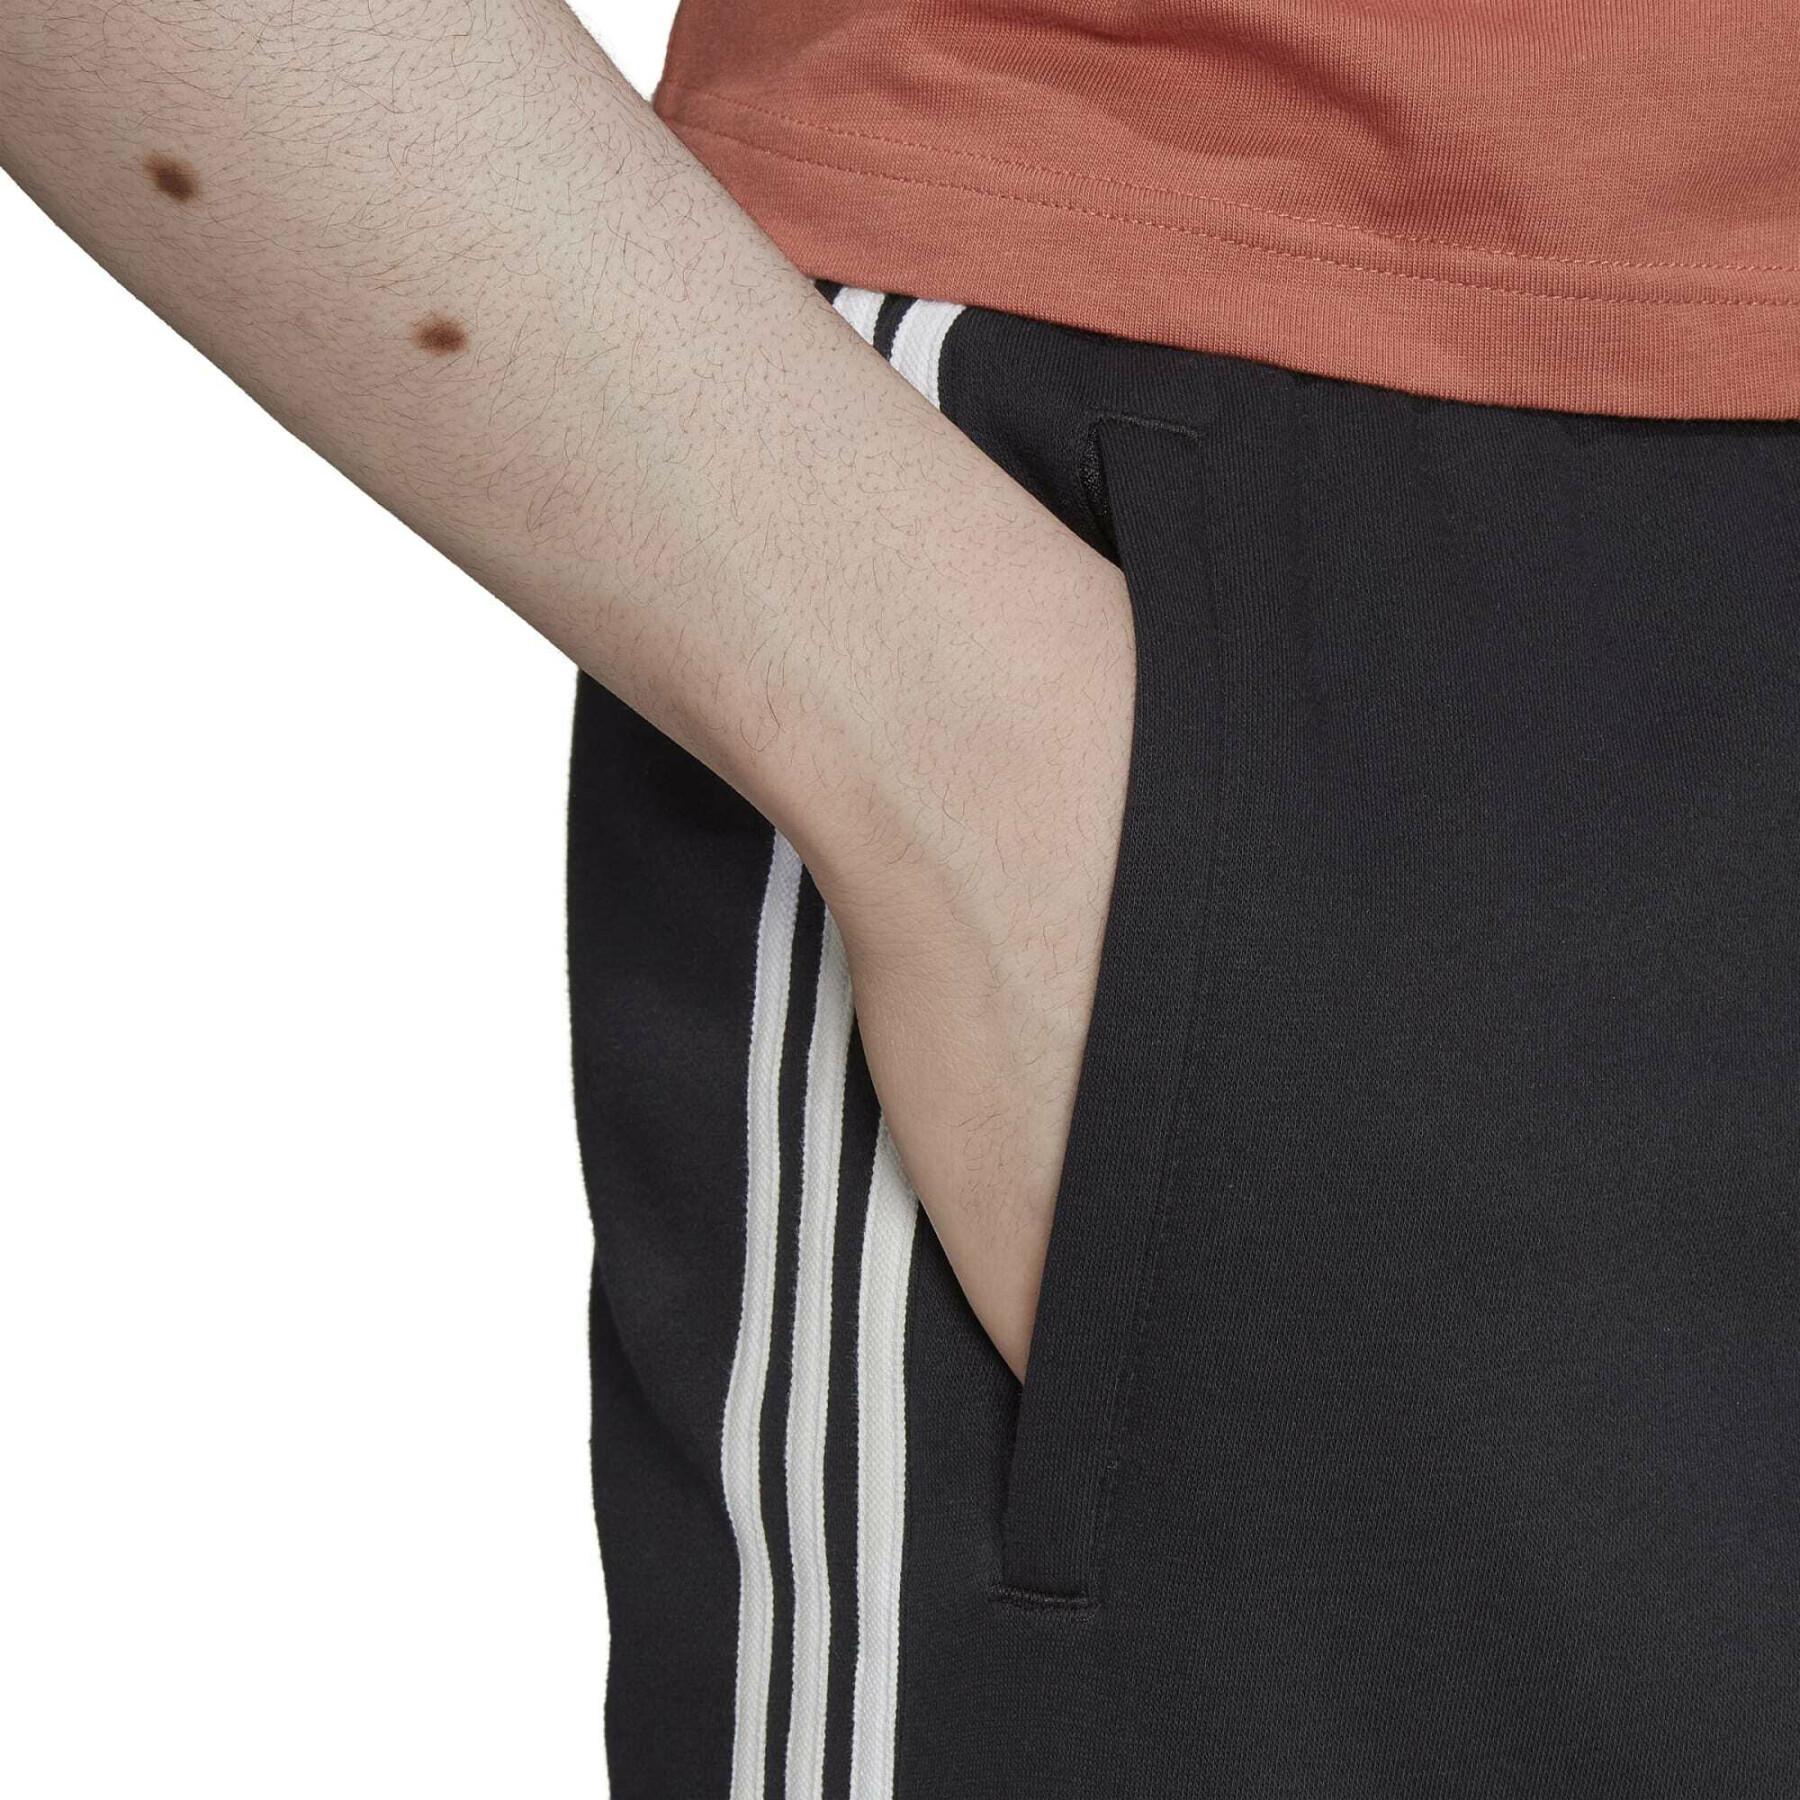 Slim-fit cargo jogging suit with 3 stripes adidas Originals Adicolor